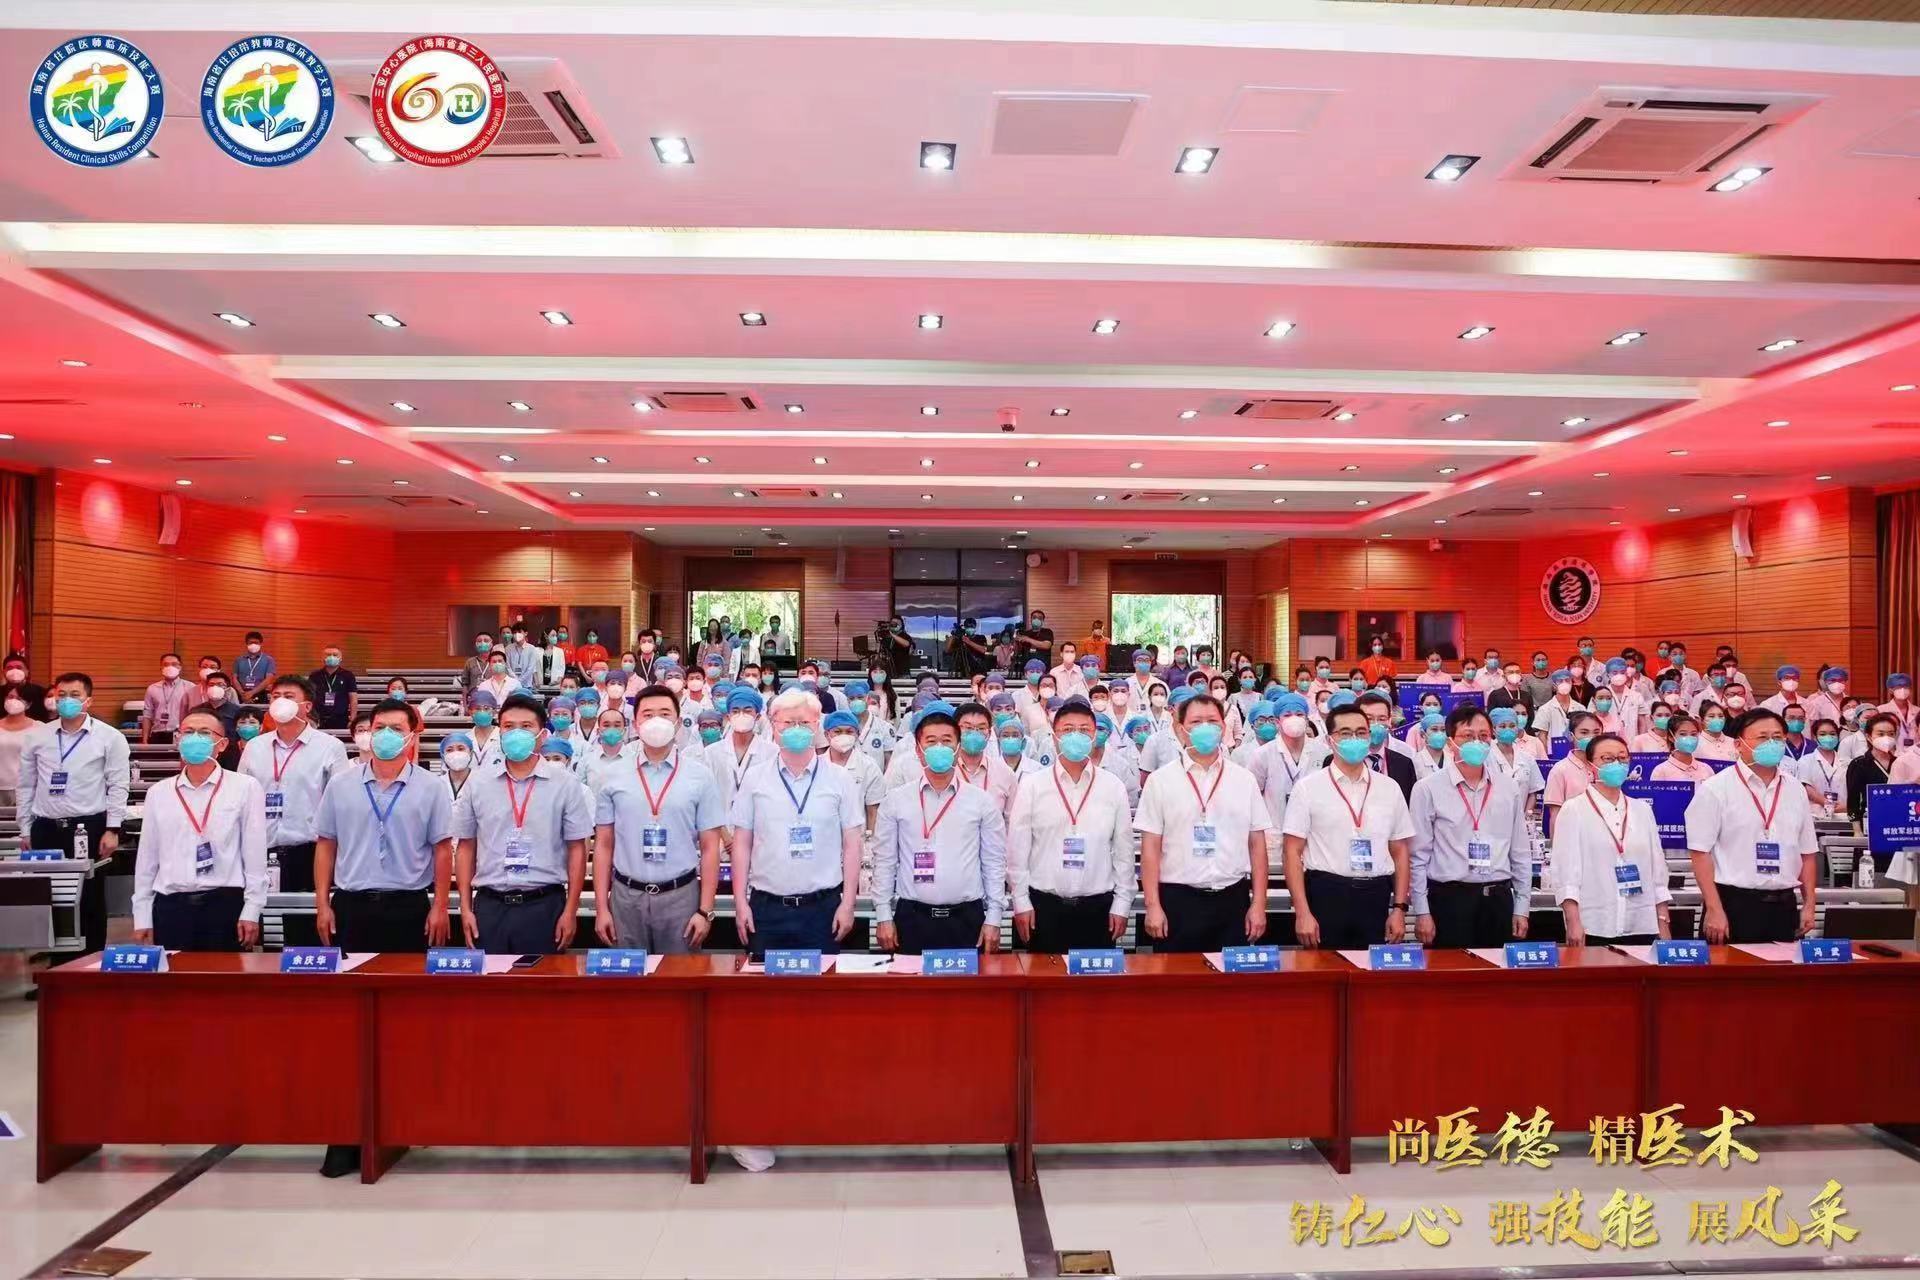 海南省第五届住院医师临床技能大赛在三亚举办